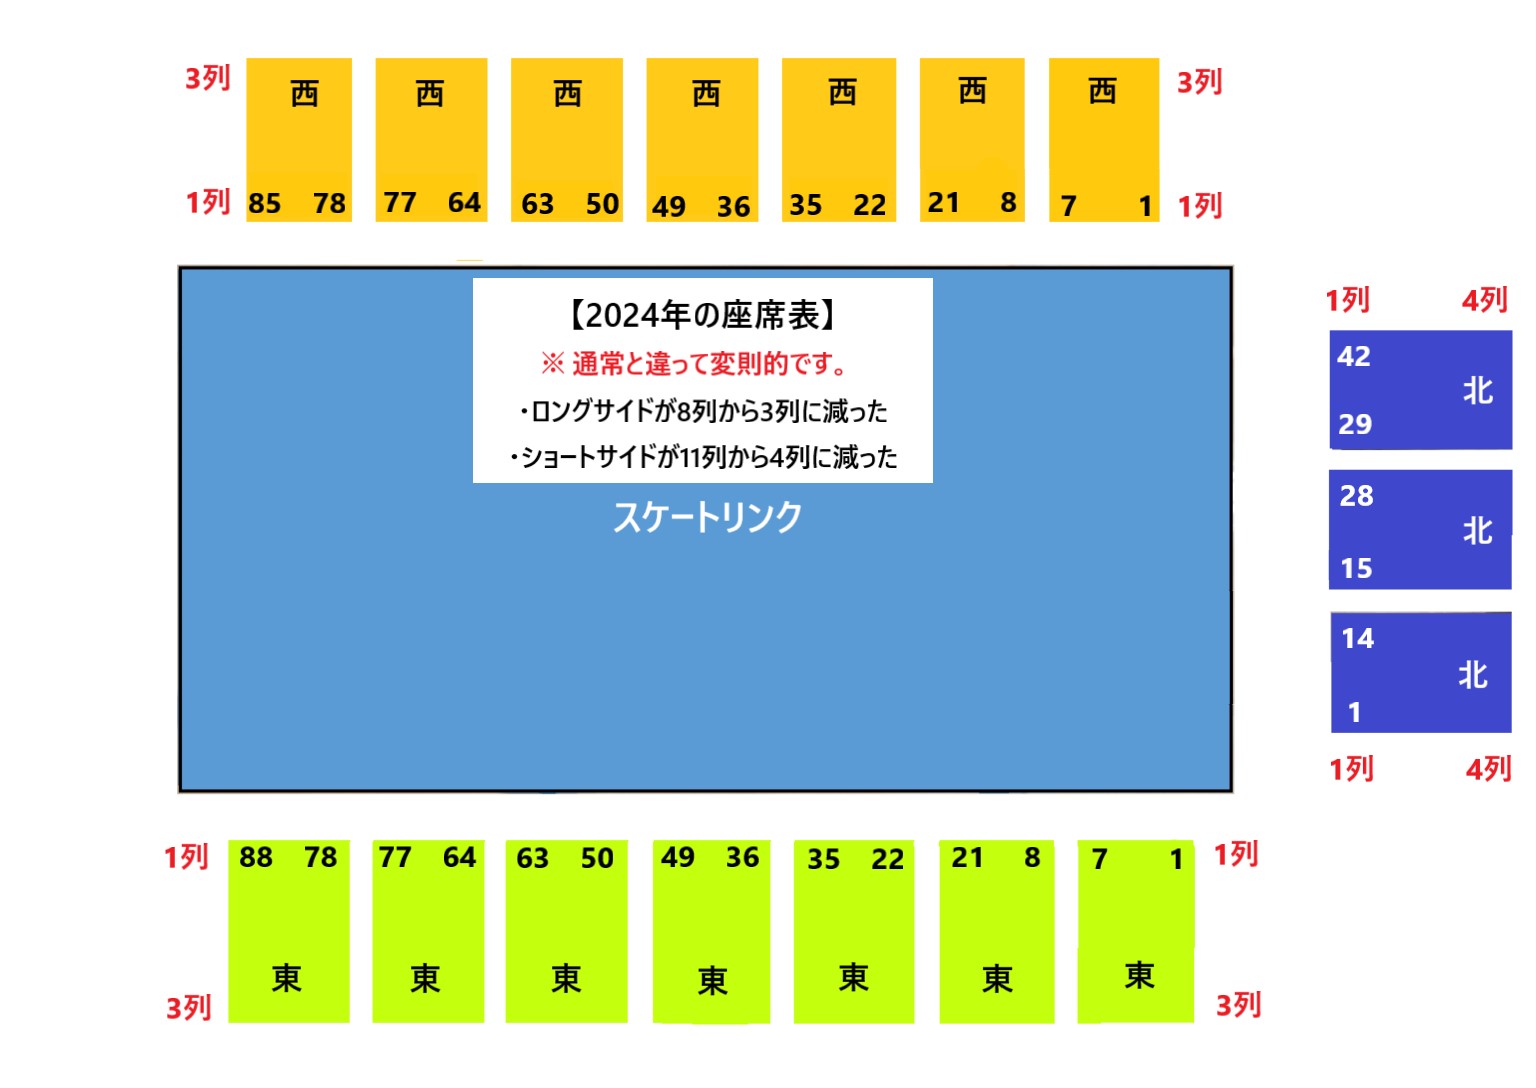 2024年の神戸公演のプレミア席・SS席(アリーナ席)の座席表